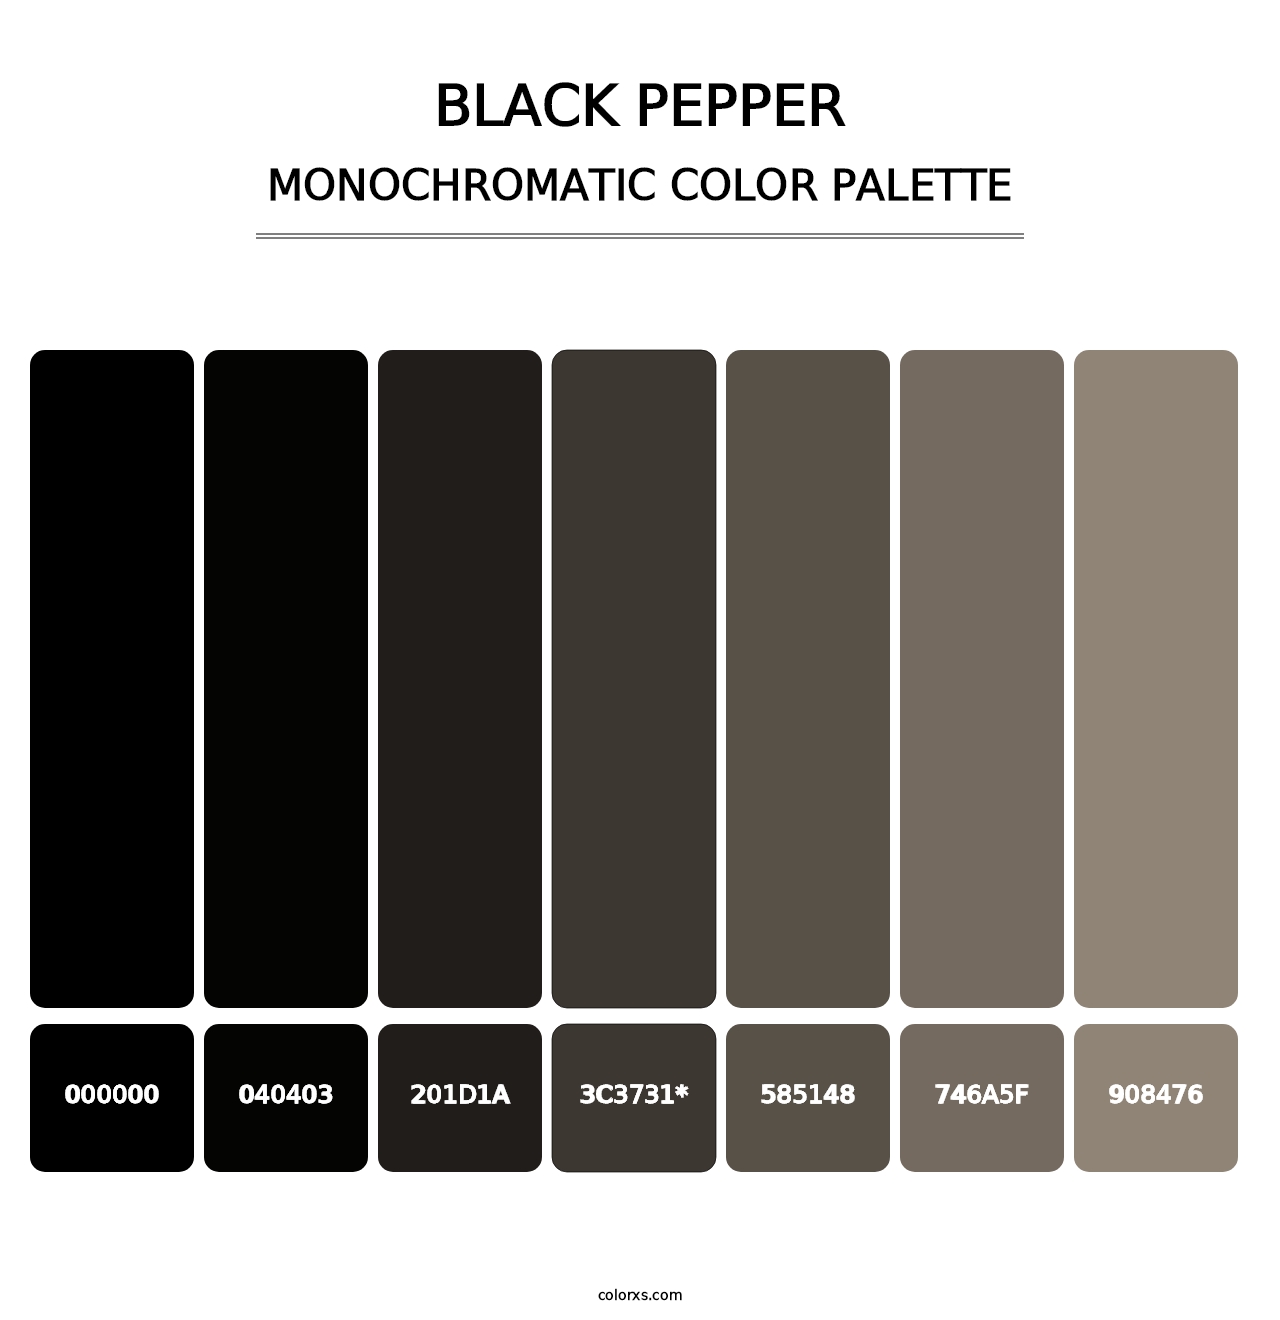 Black Pepper - Monochromatic Color Palette